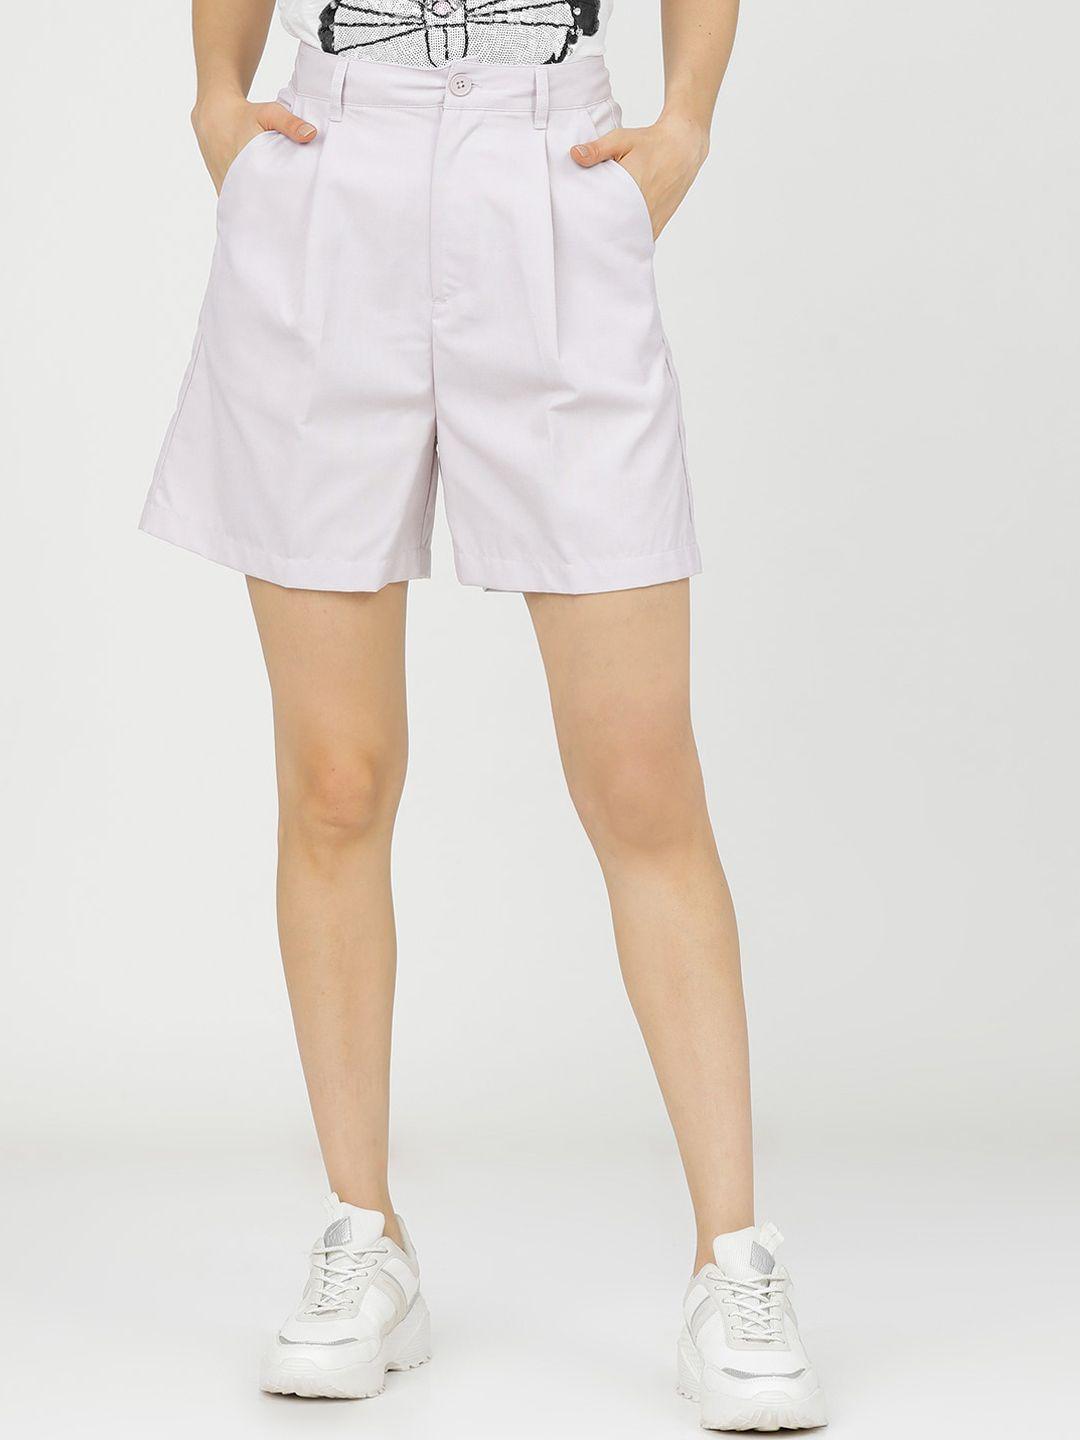 tokyo talkies women white high-rise regular shorts